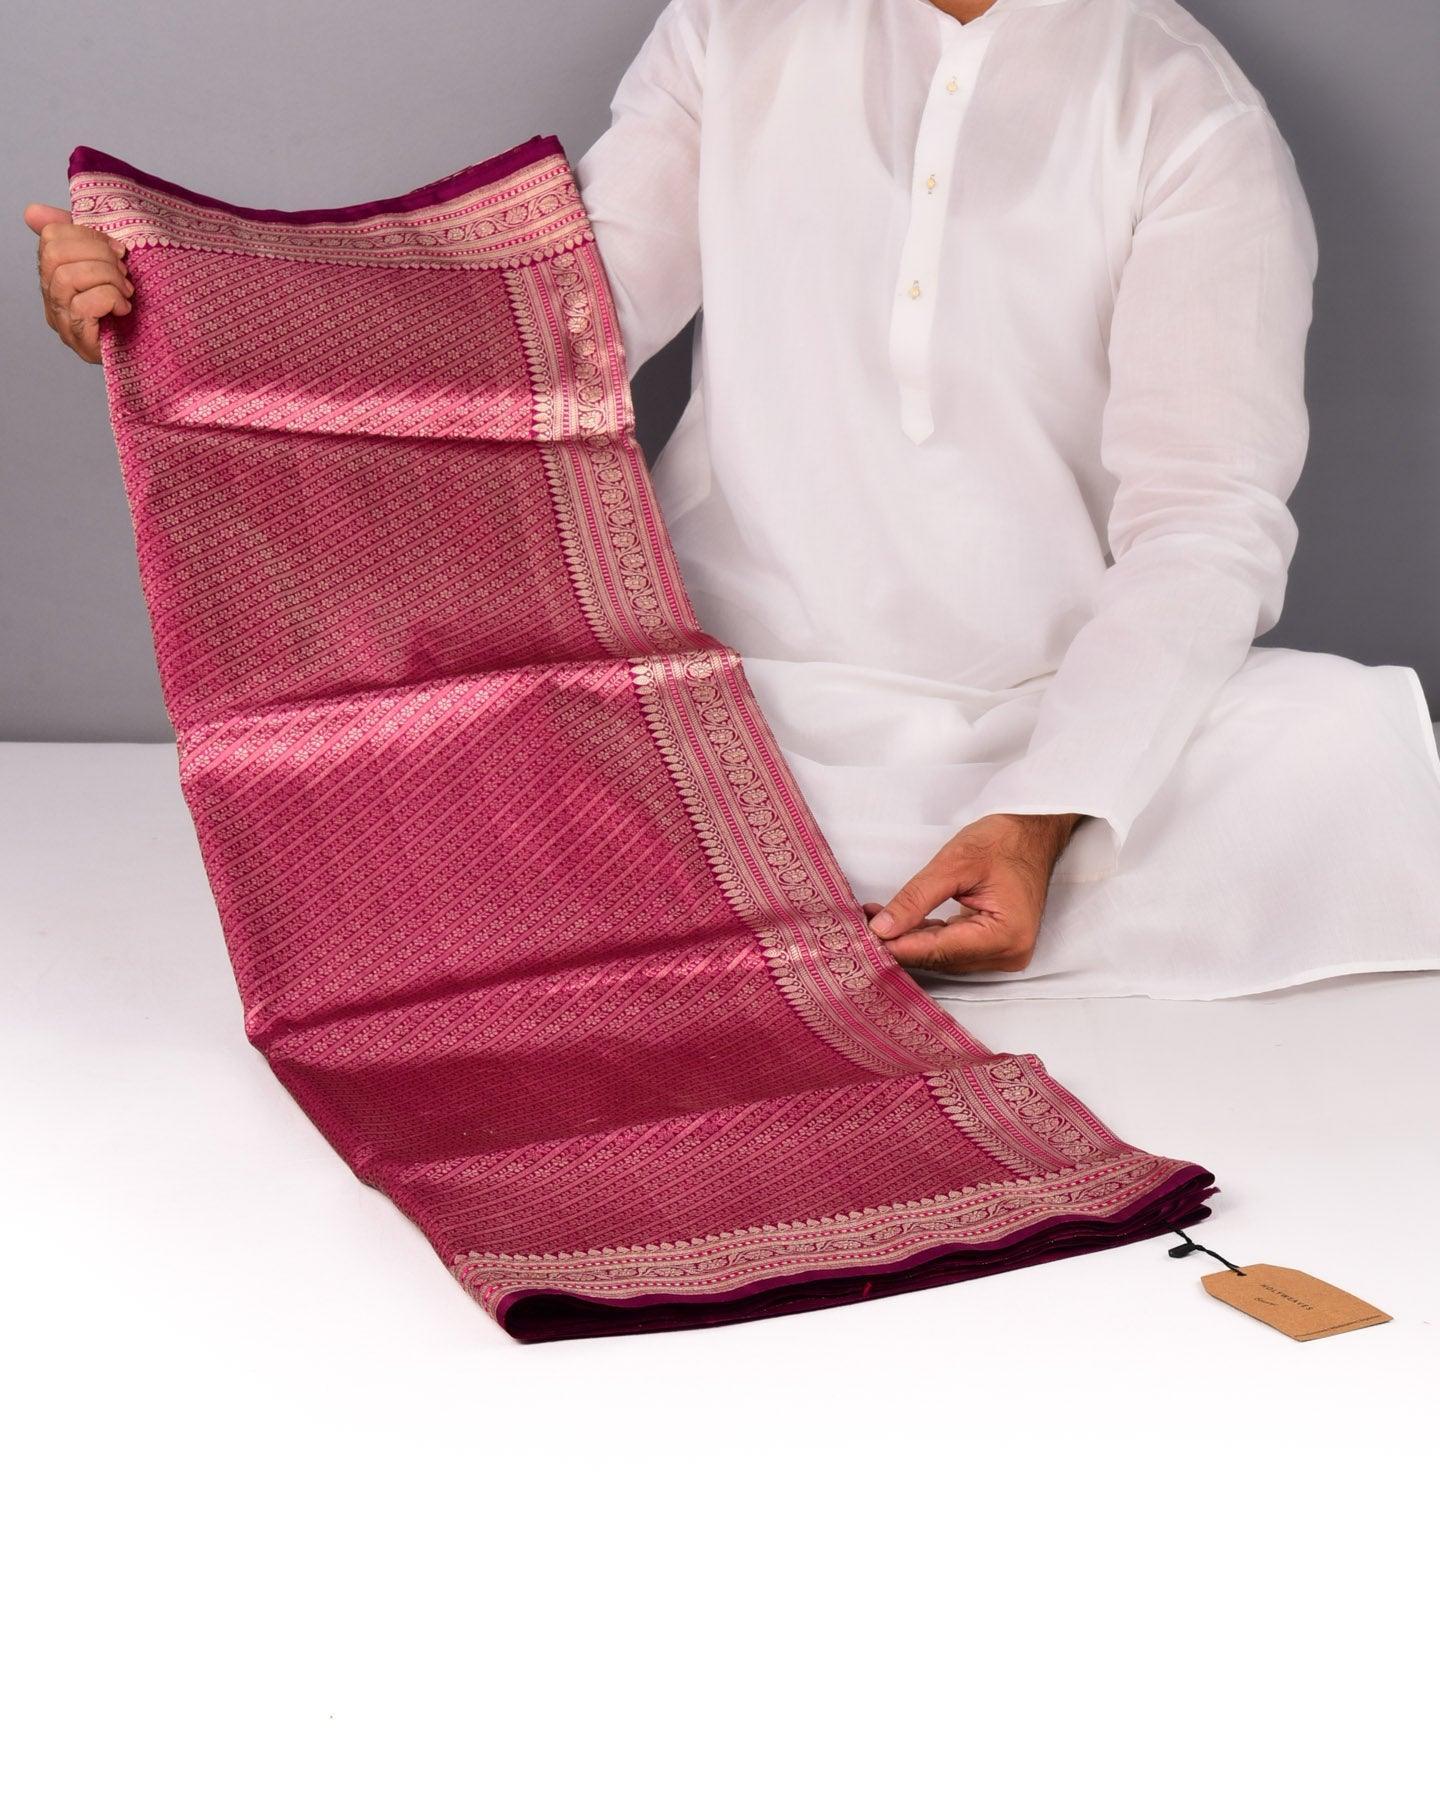 Magenta Banarasi Kadhuan Brocade Handwoven Katan Silk Saree with Doria Border - By HolyWeaves, Benares